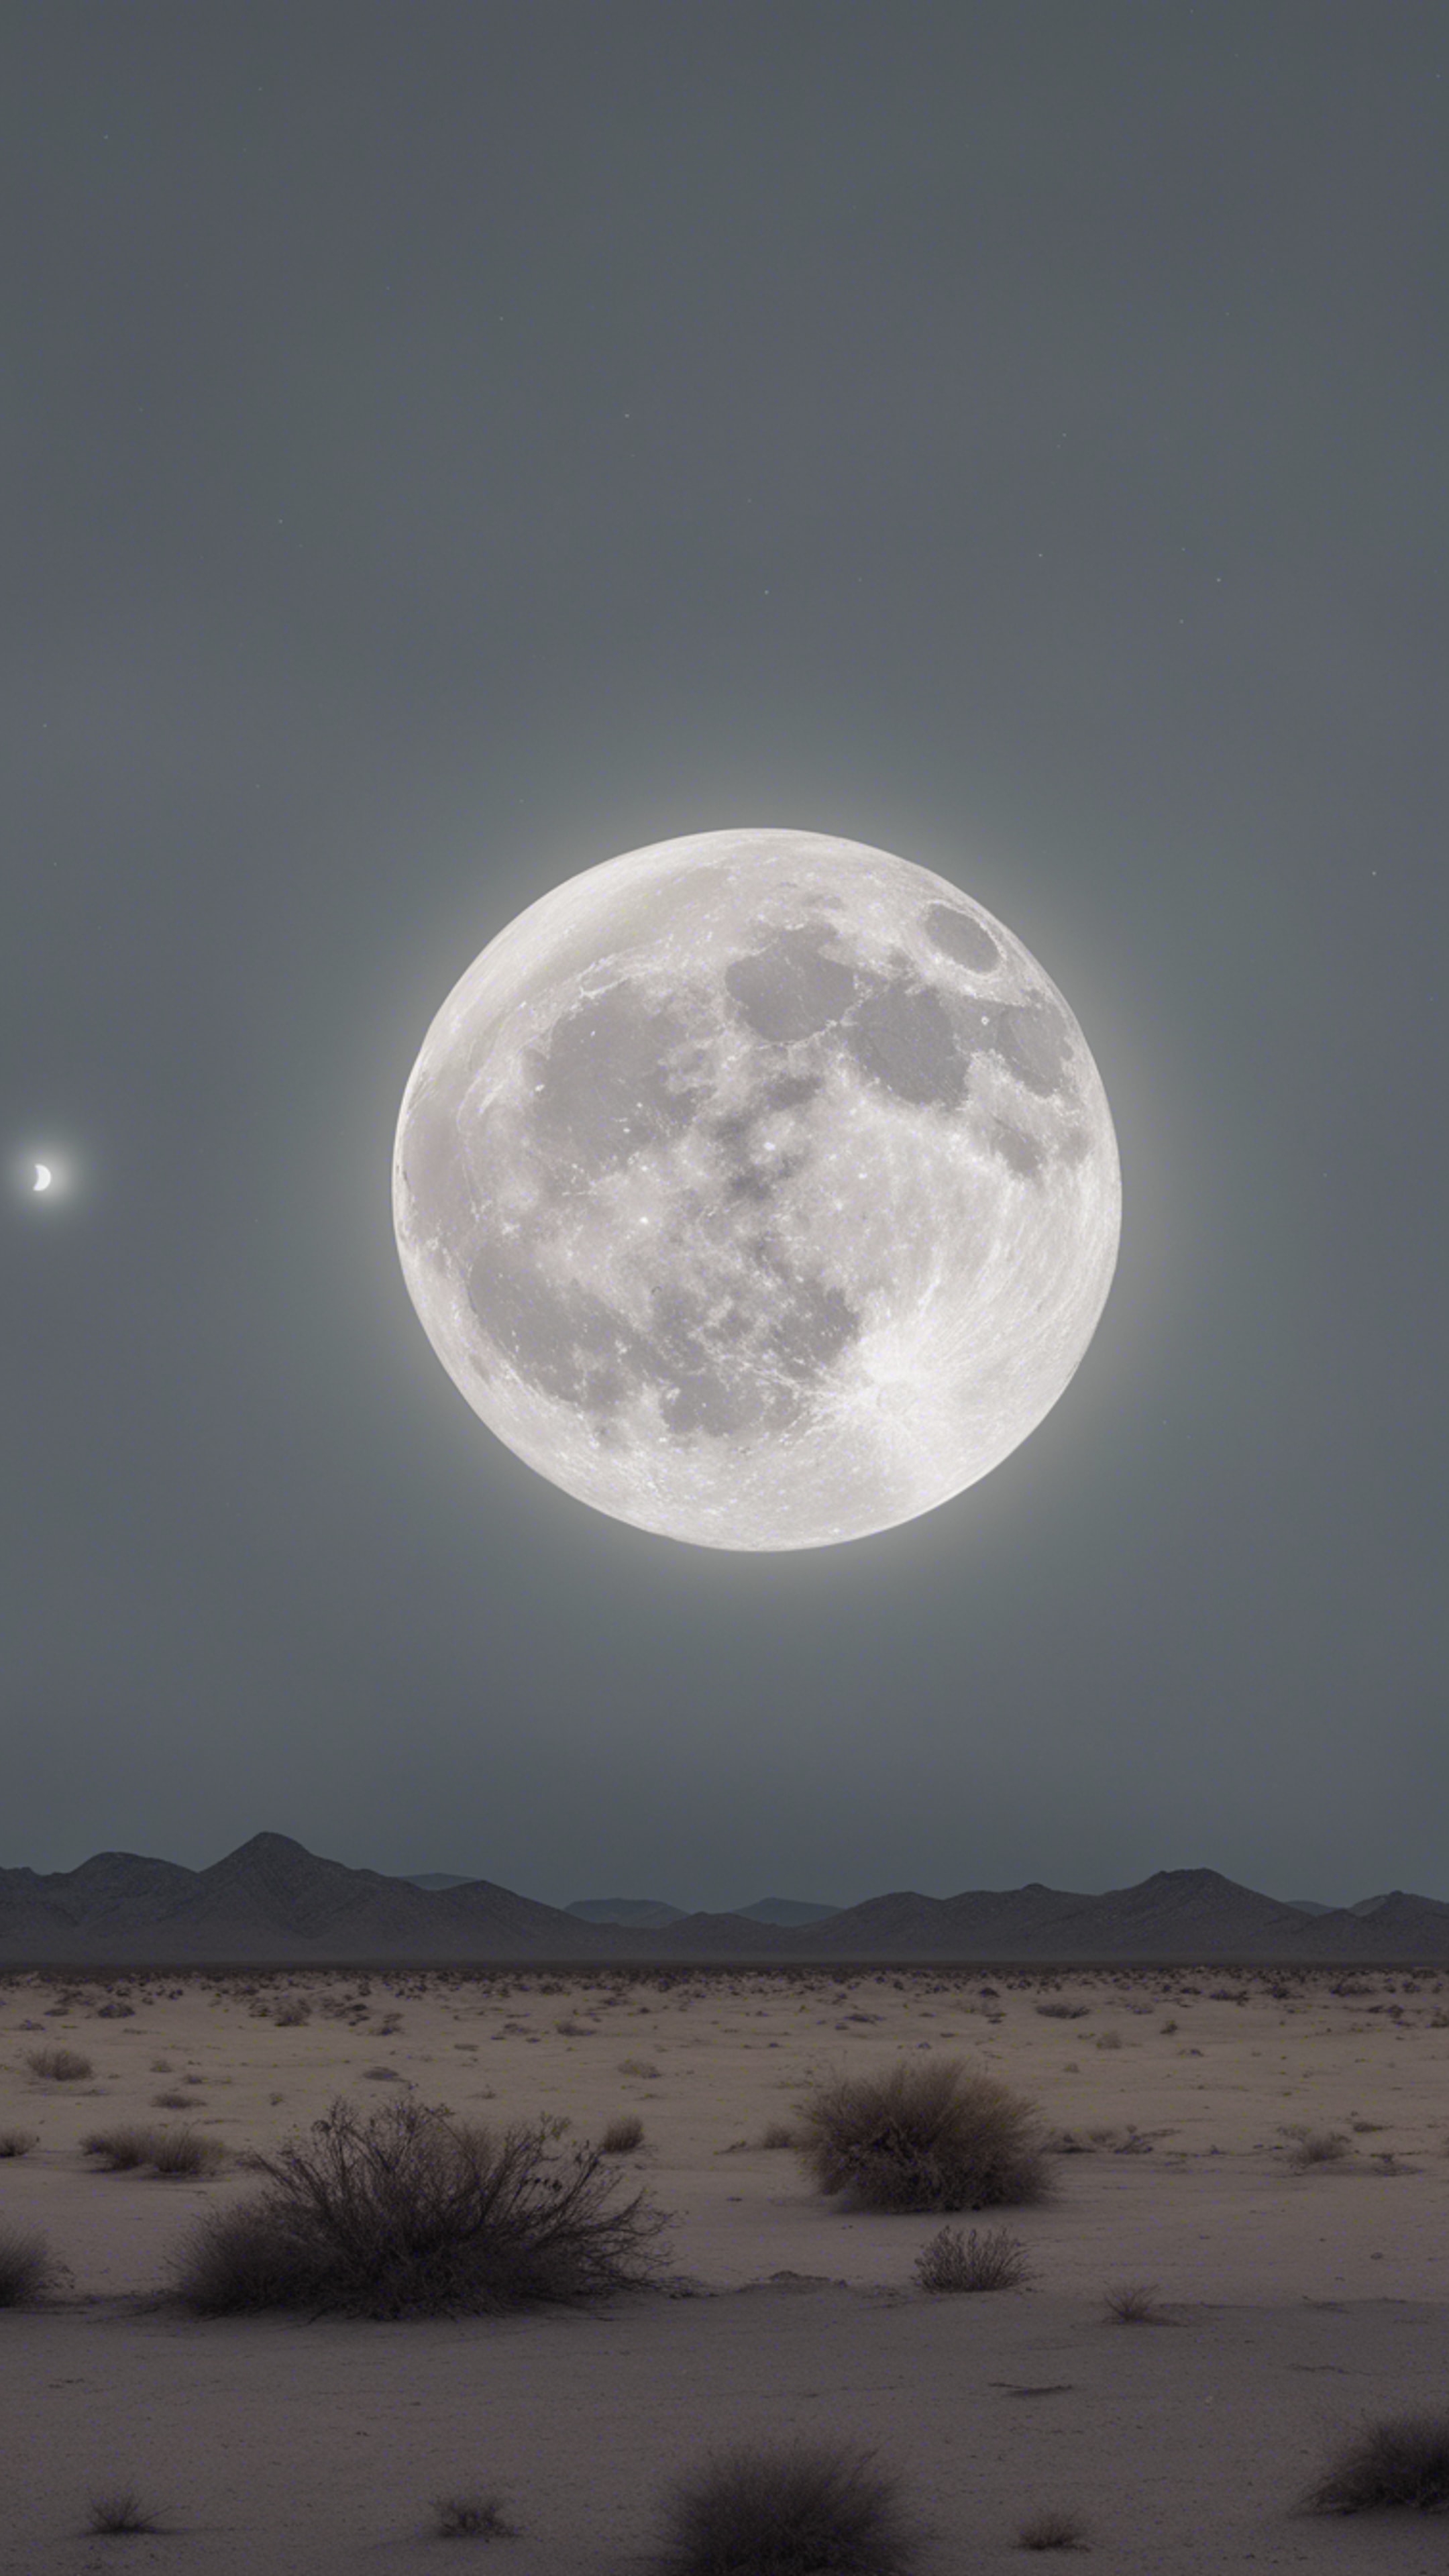 An eerie full moon casting a light gray hue over a desolate desert landscape. Wallpaper[b219b4d700dc4cdd8b88]